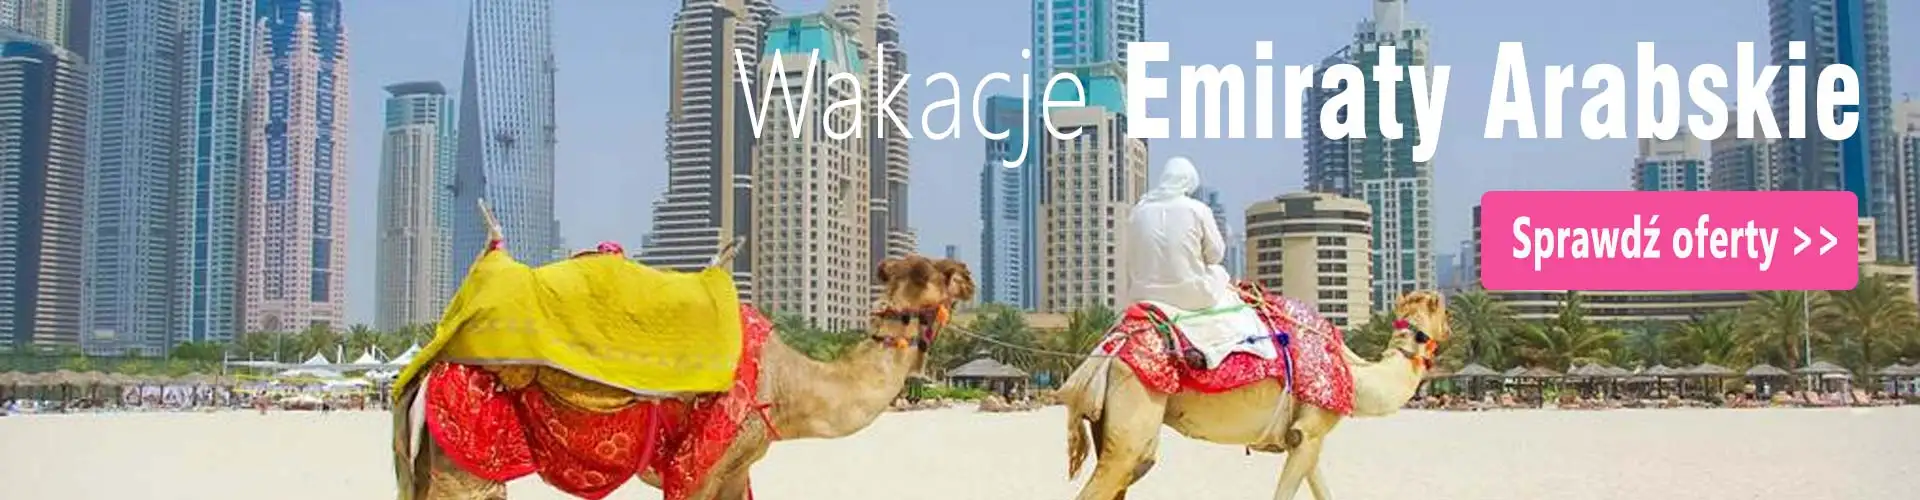 Emiraty Arabskie wakacje last minute